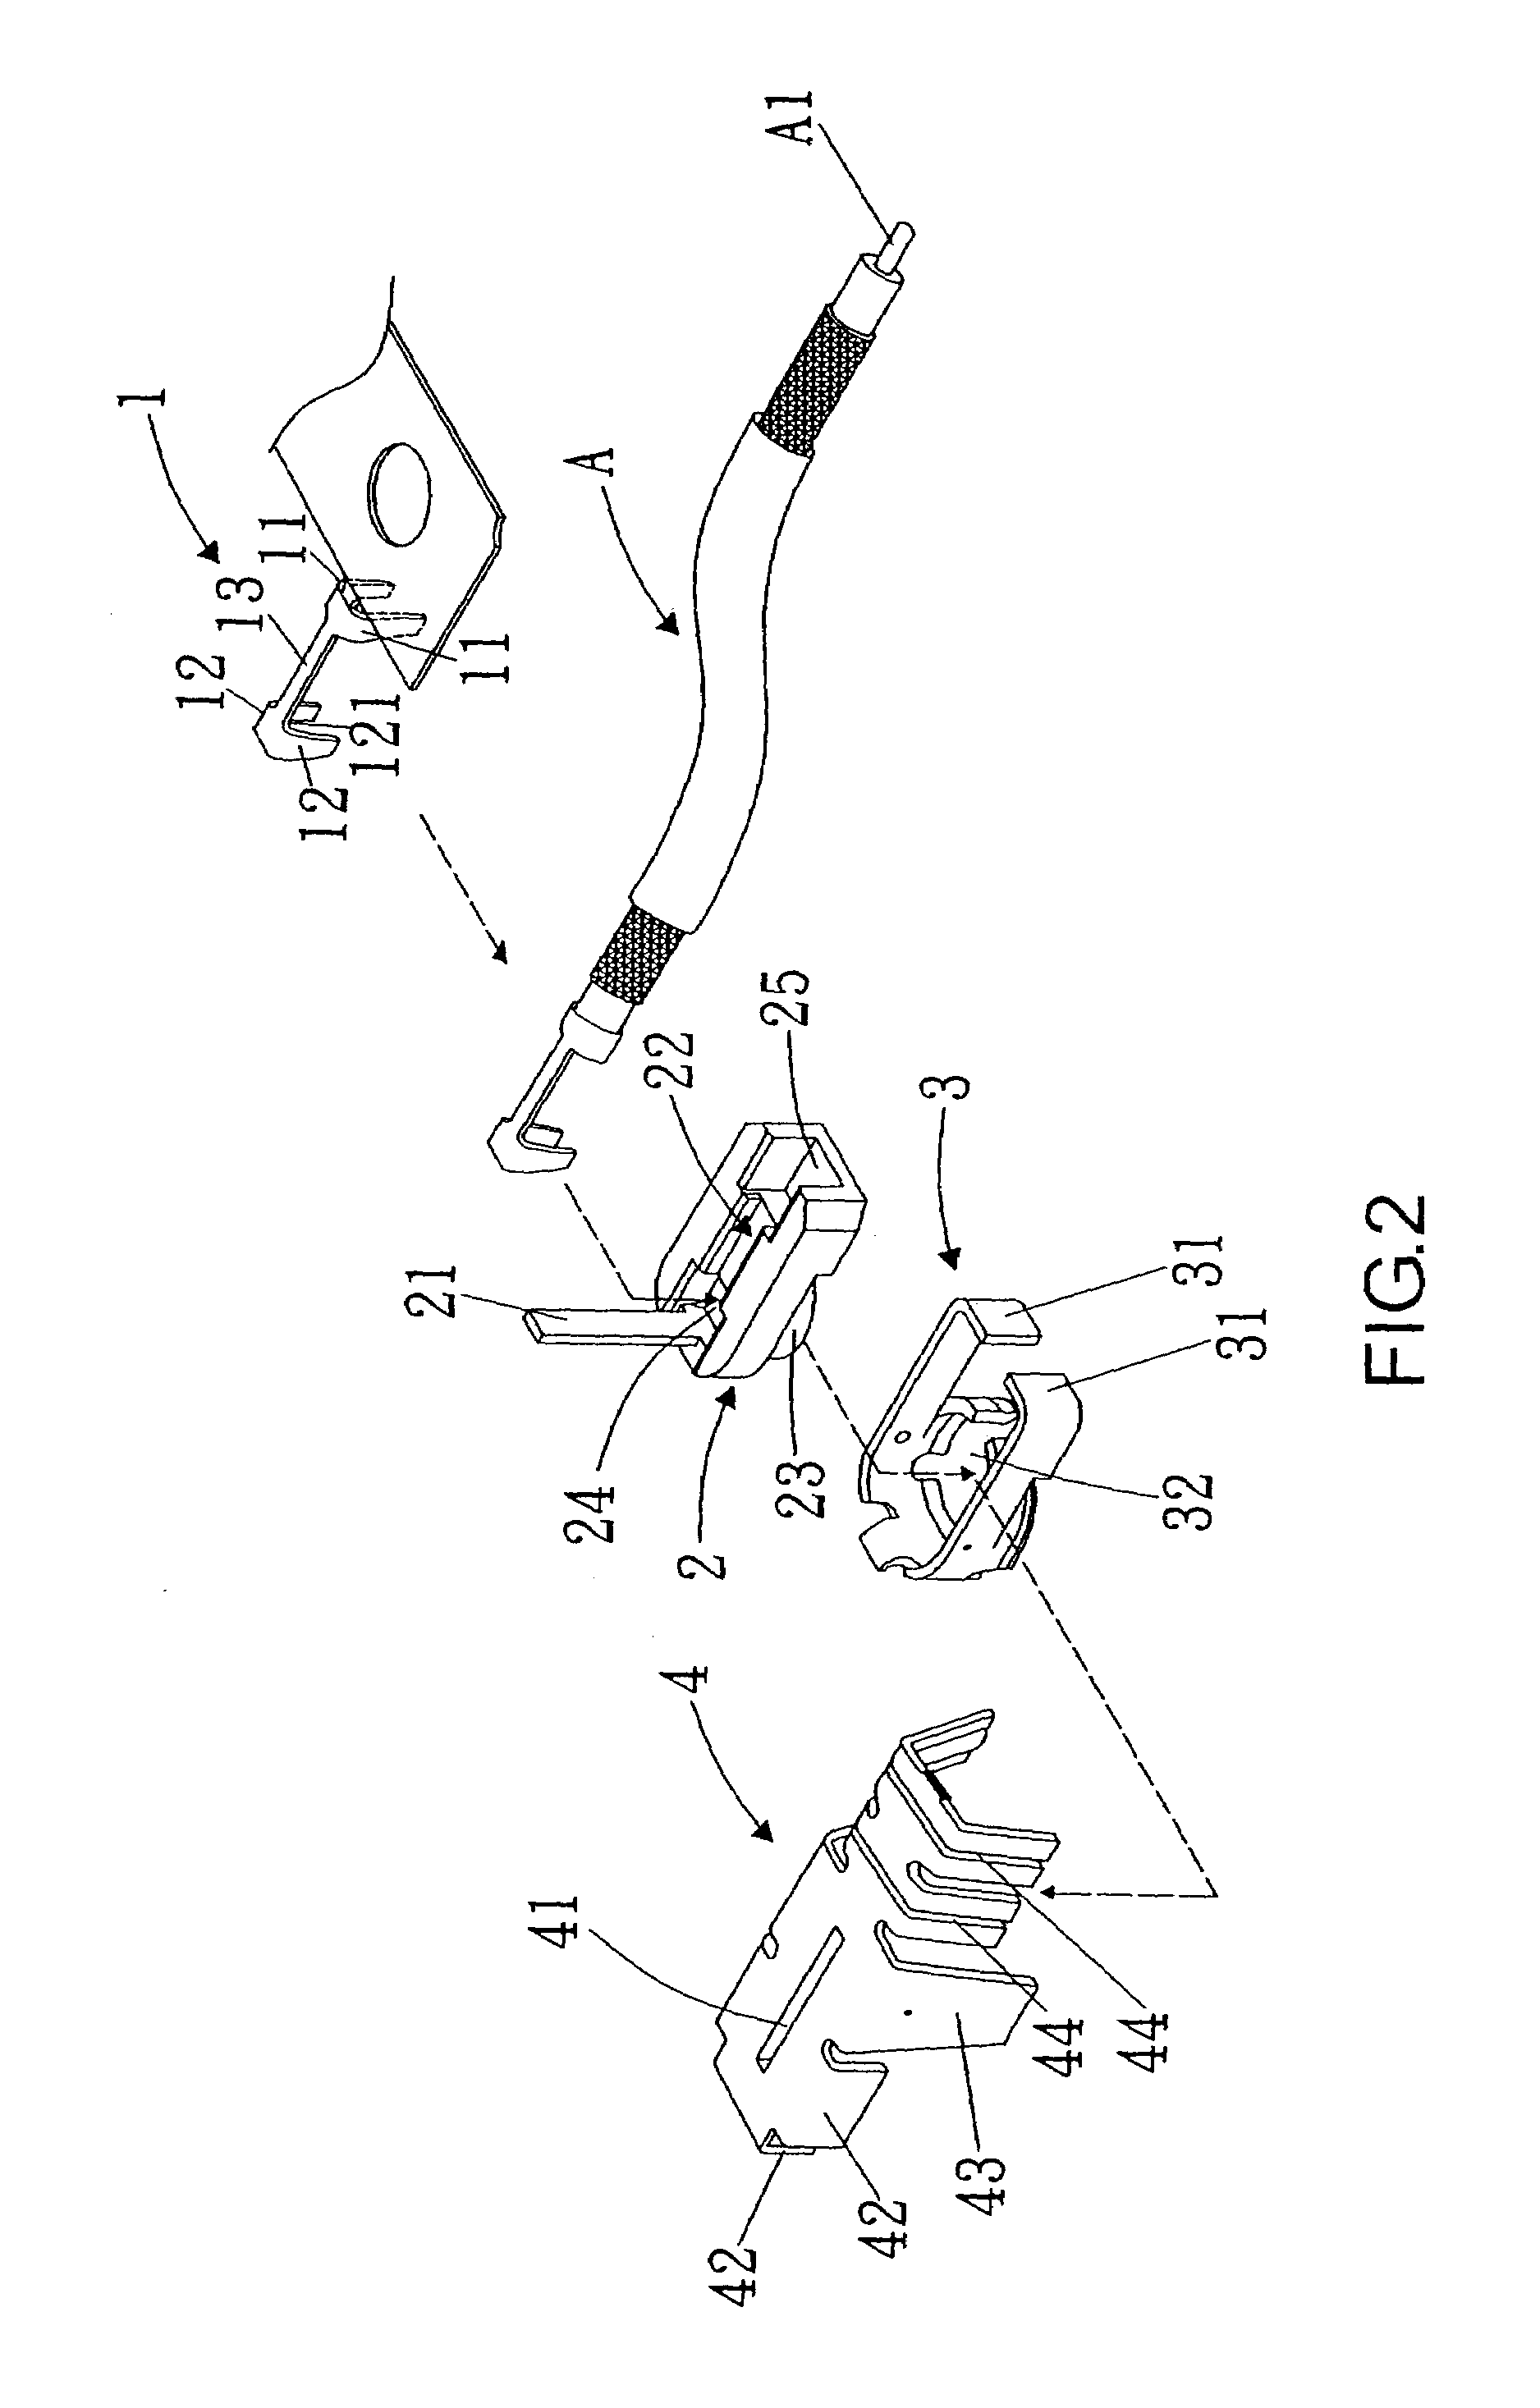 Micro coaxial connector